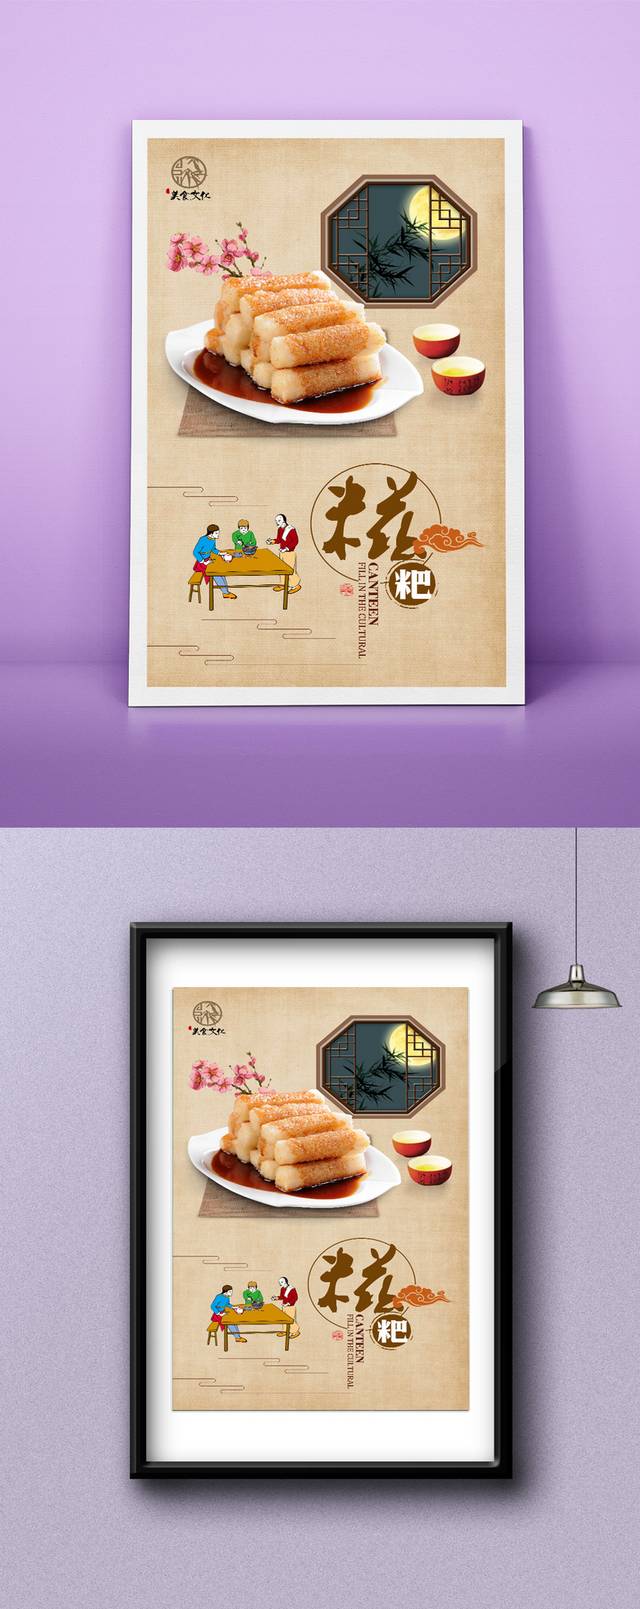 中国风糍粑美食宣传海报设计